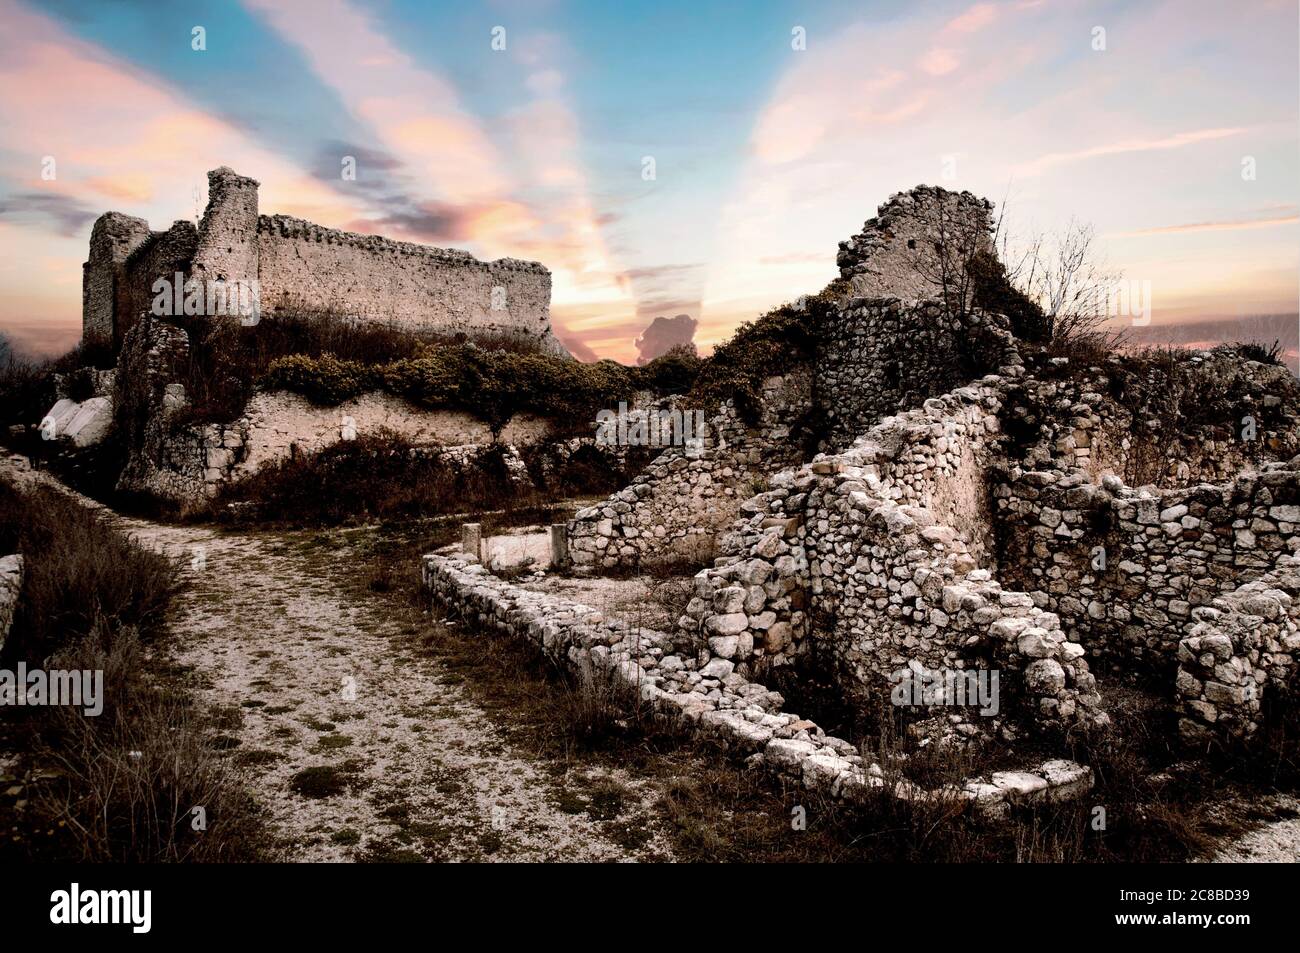 Ruin of ancient village "Alba Fucens" at sunset near Avezzano, Italy Stock Photo